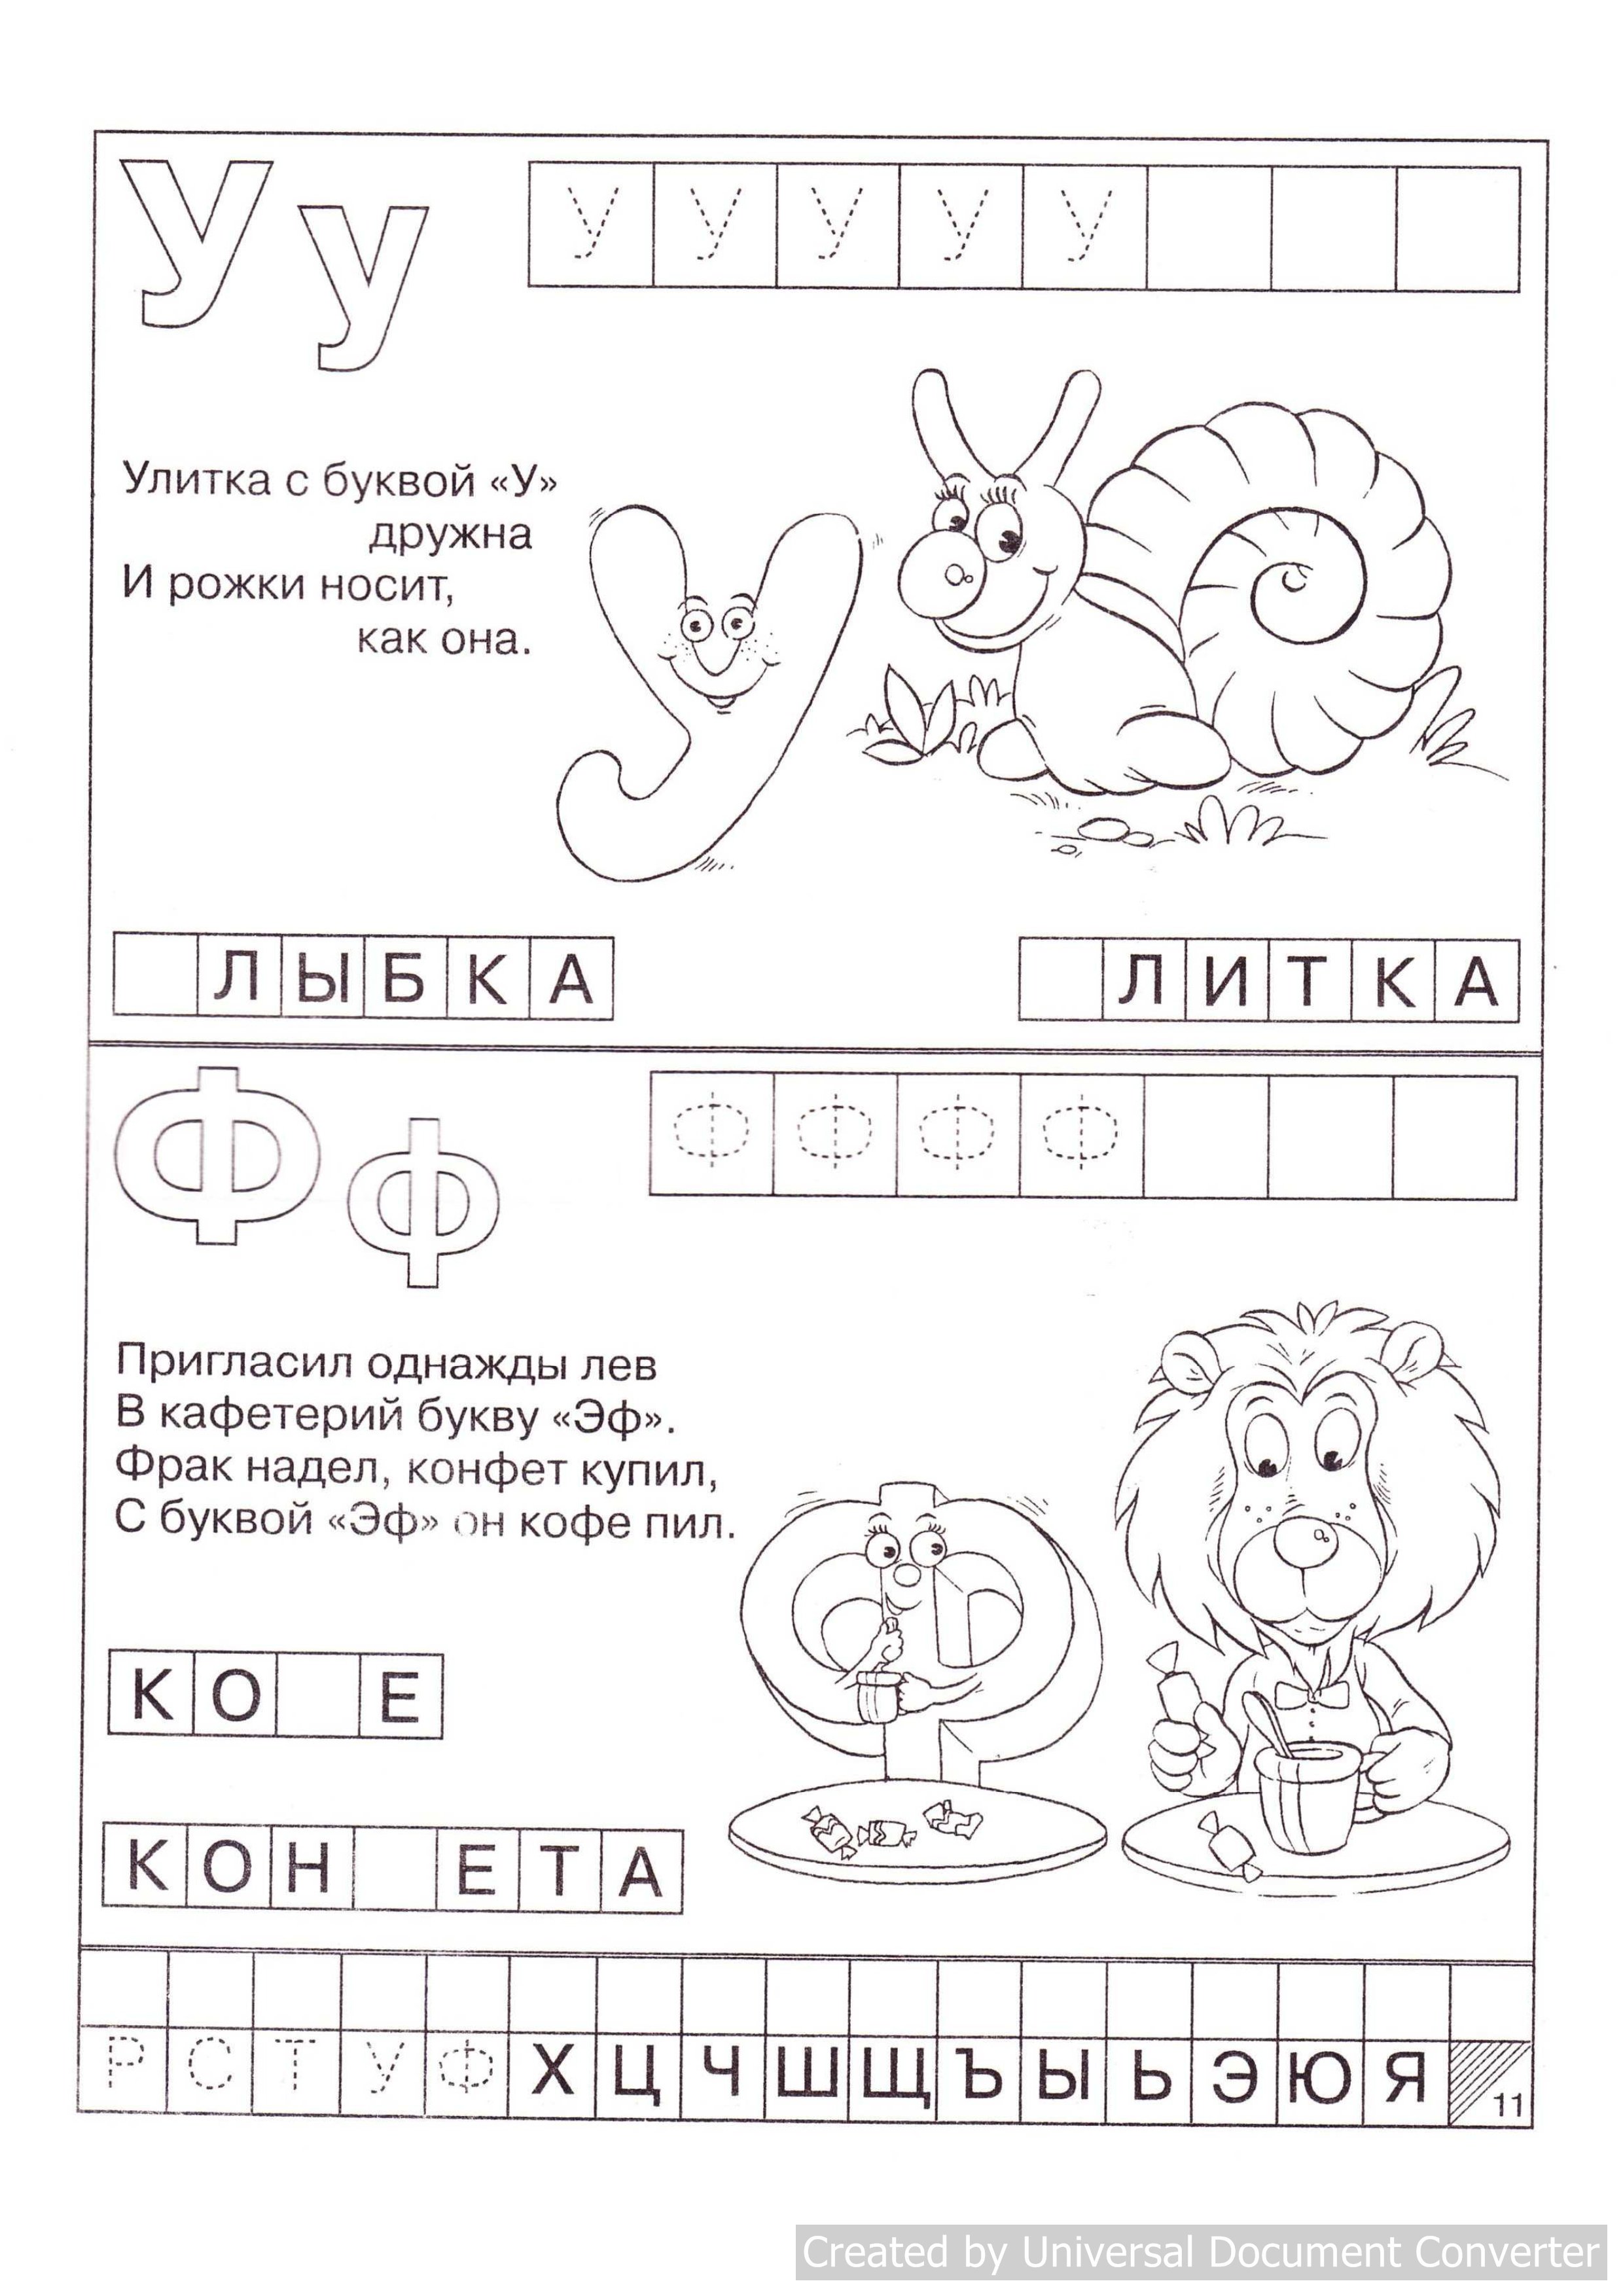 Научить ребенка буквам быстро. Учим букву с задания для дошкольников 4-5 лет. Как научить ребенка азбуке в 5 лет. Изучение букв для детей. Изучение алфавита для дошкольников.